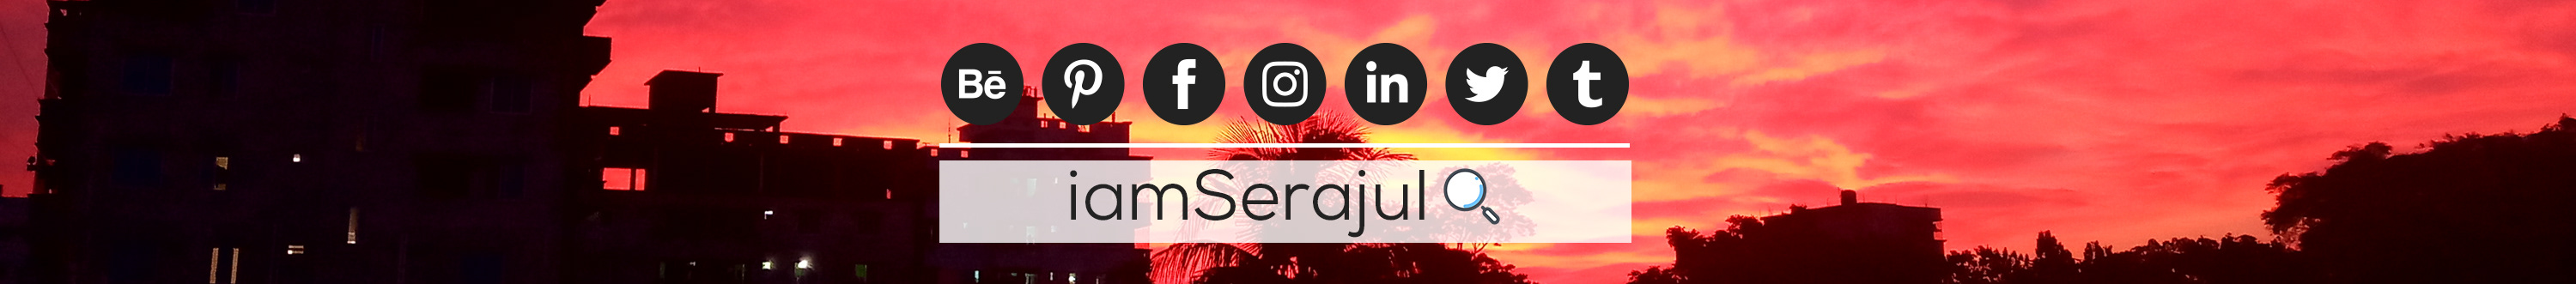 Md Serajul Islam's profile banner